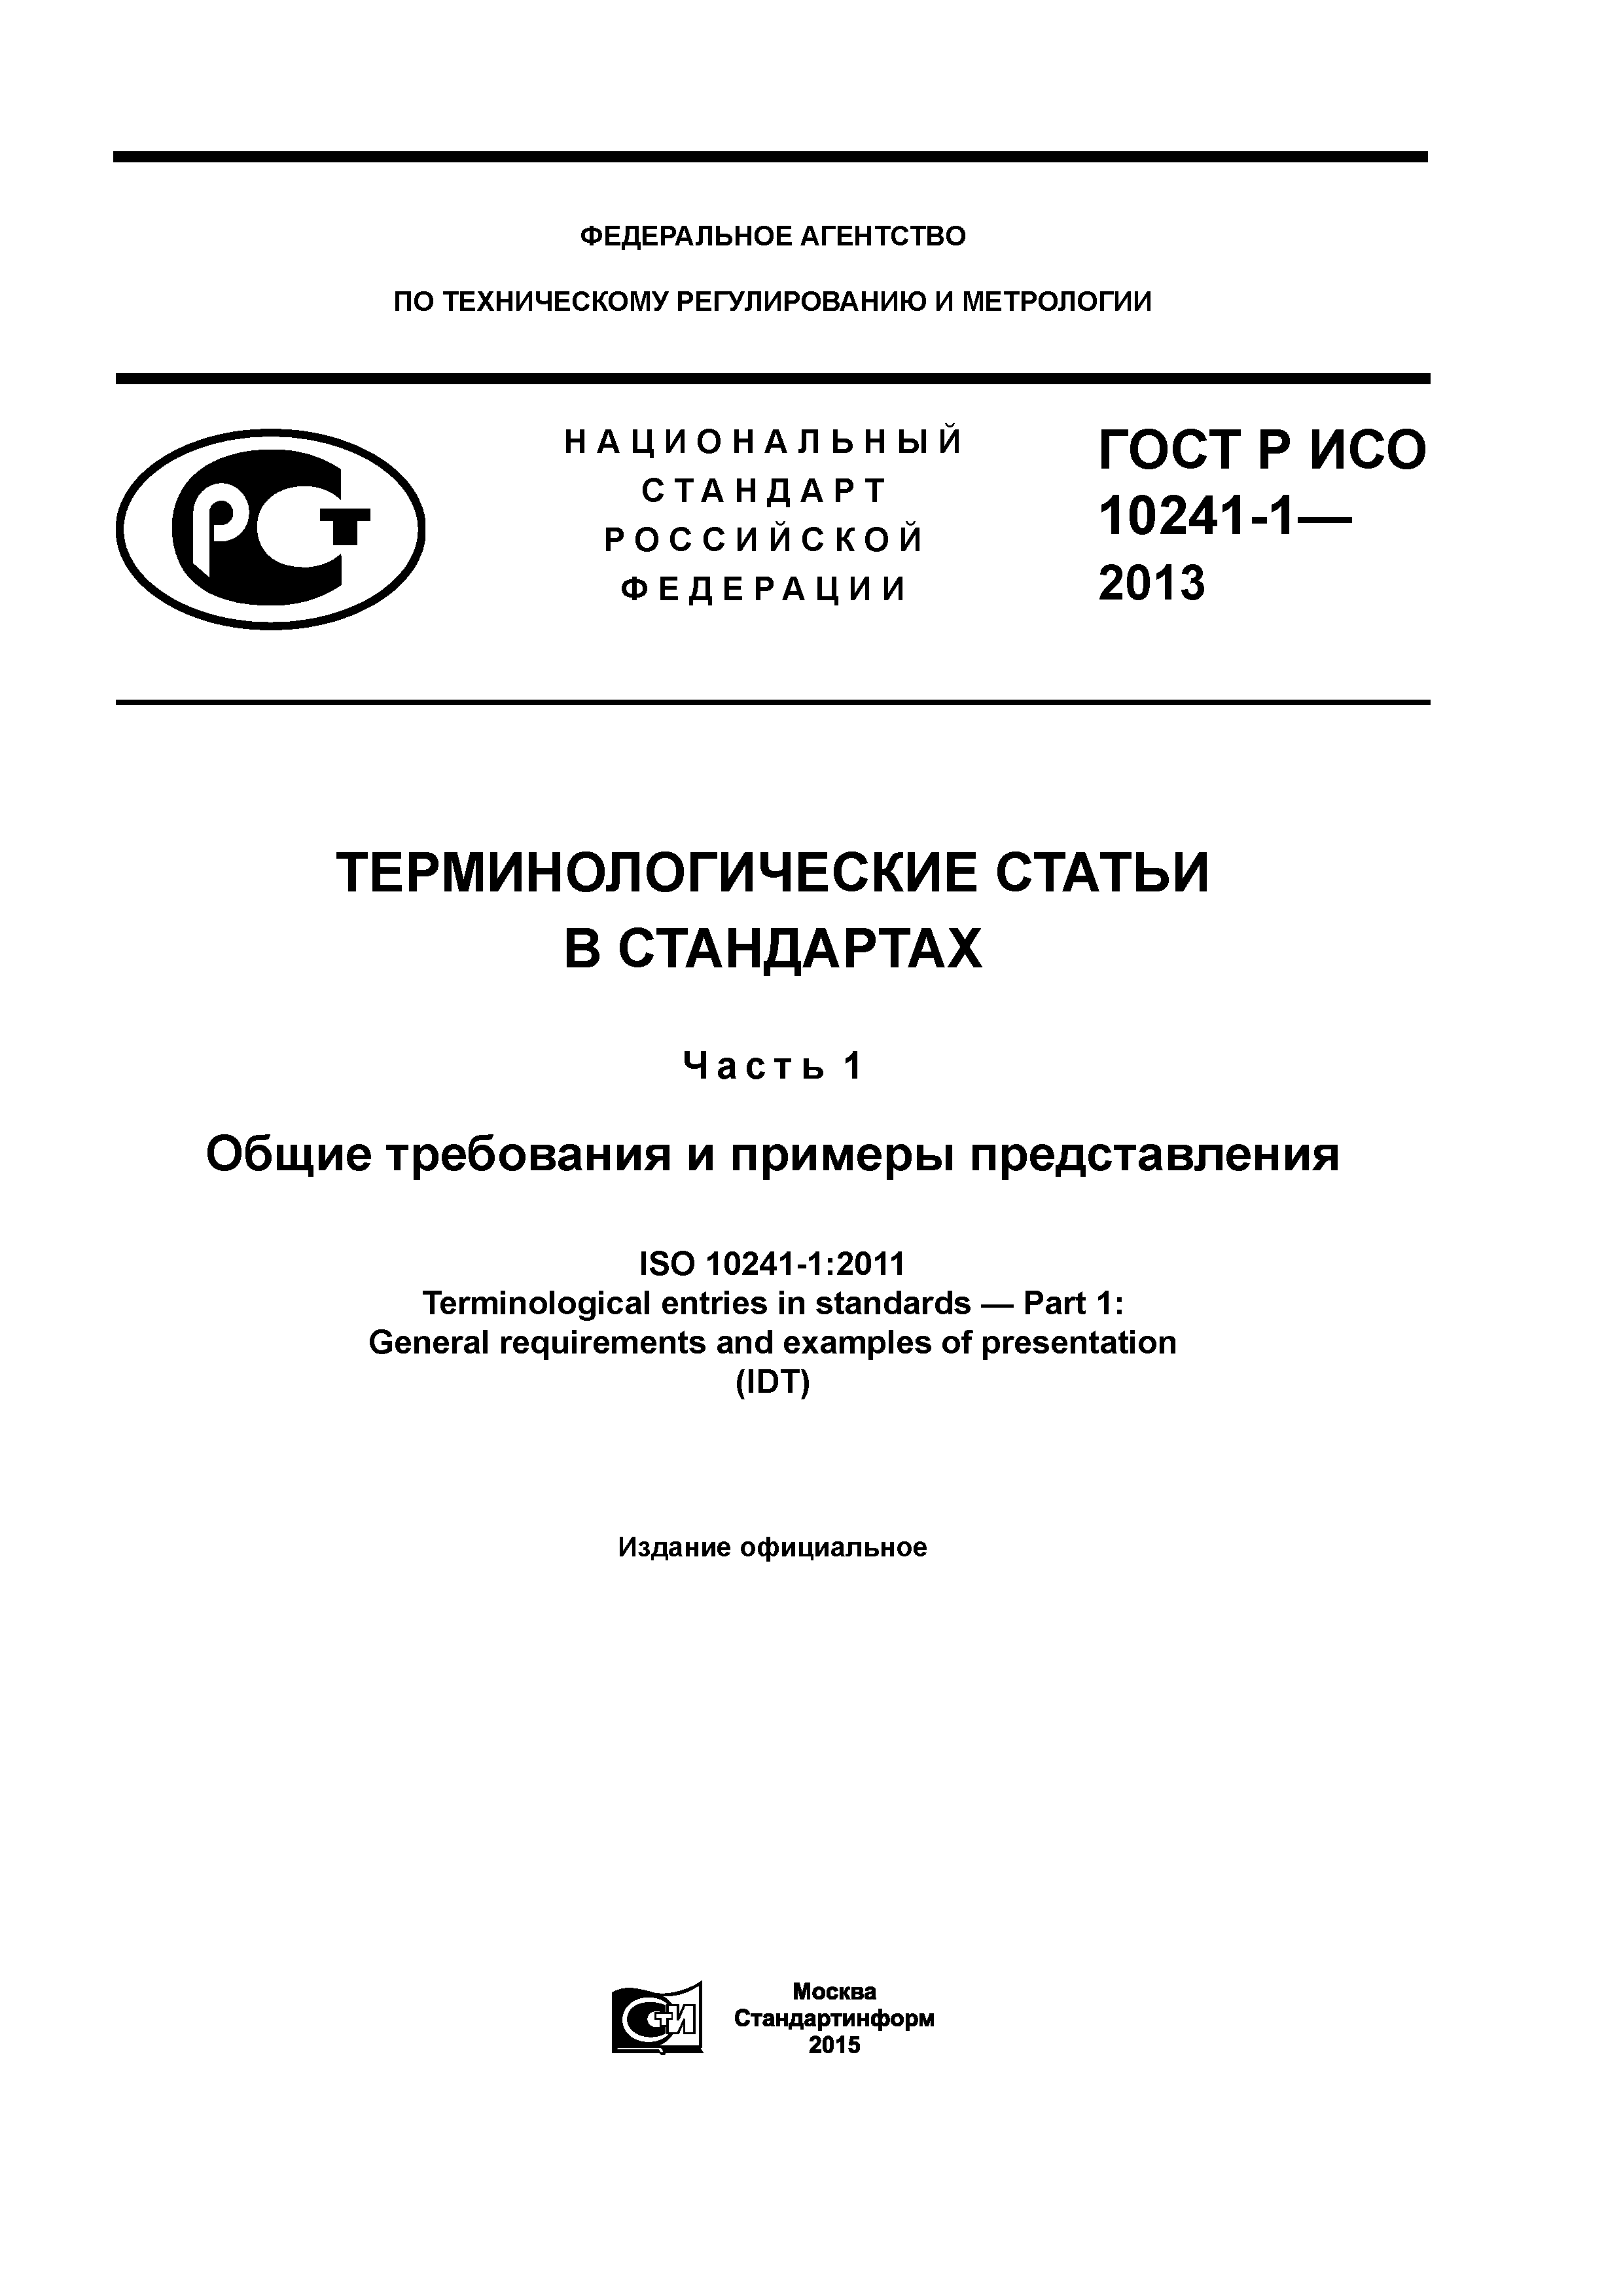 ГОСТ Р ИСО 10241-1-2013